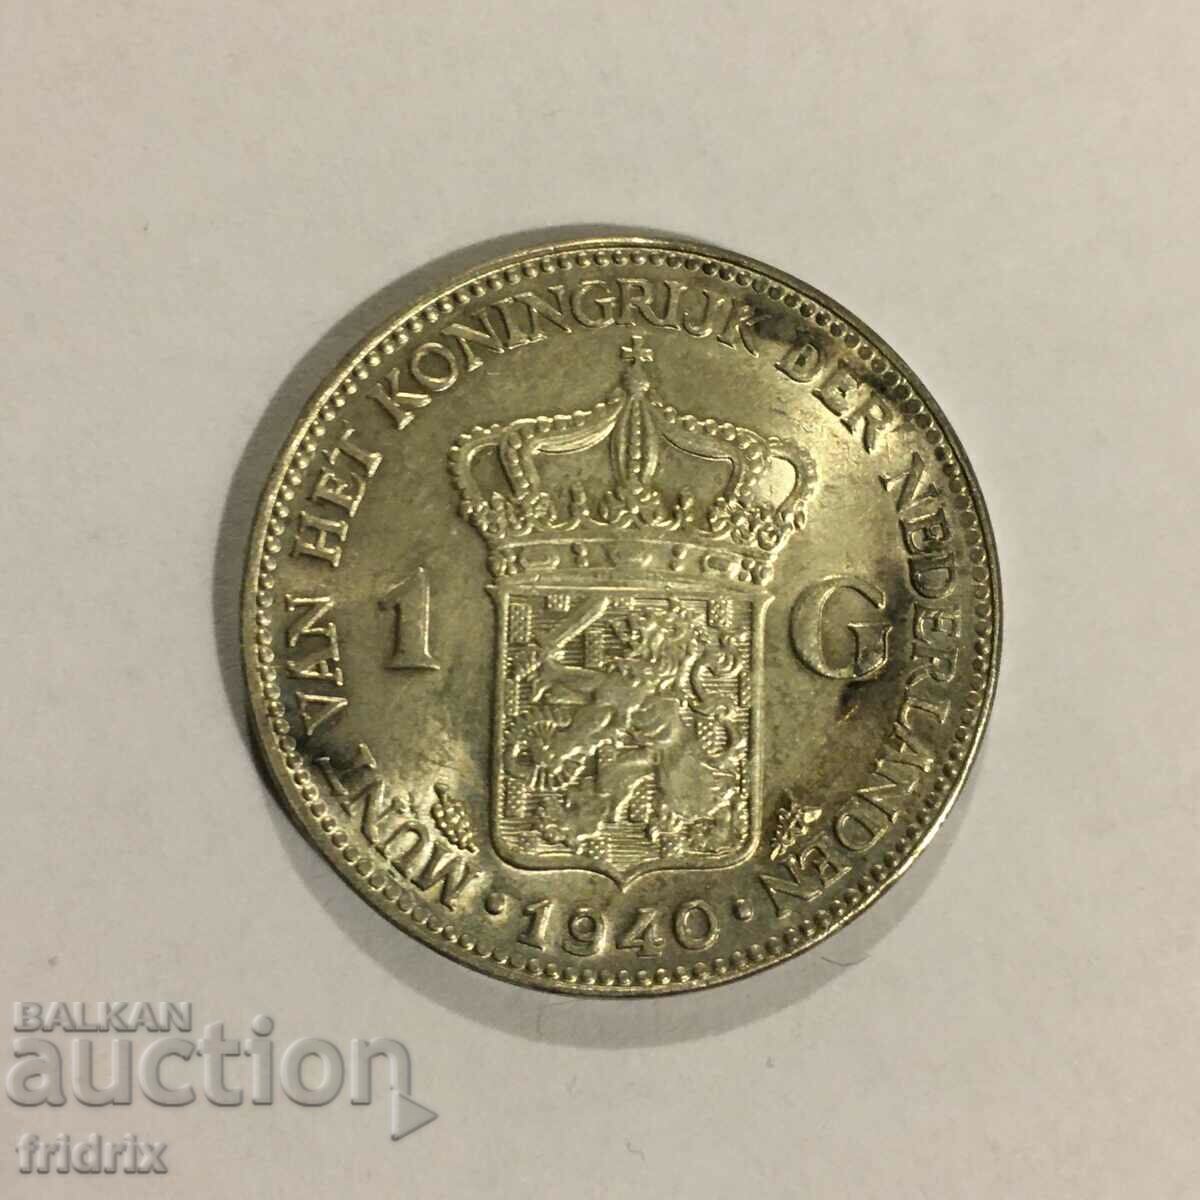 Țările de Jos 1 gulden 1940 / Olanda 1 gulden 1940 UNC